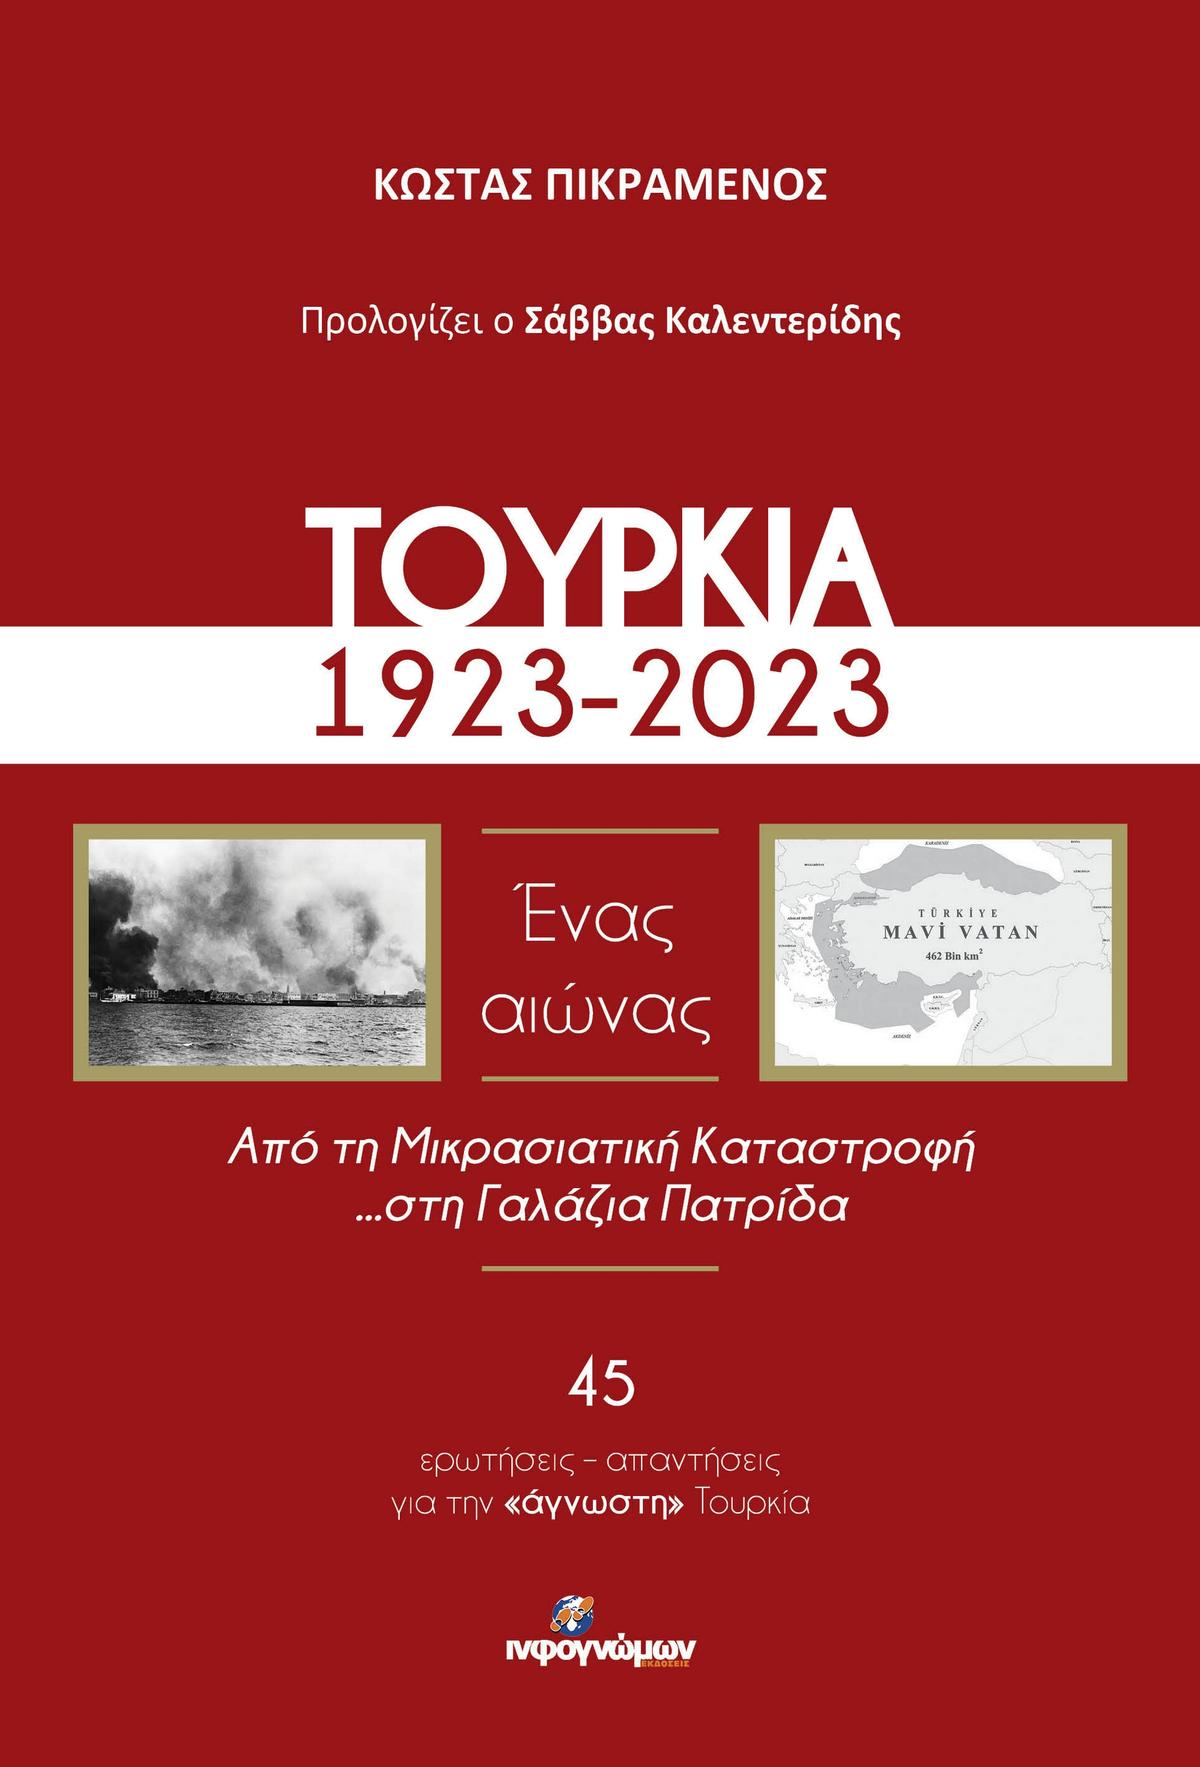 Τουρκία, 1923-2023. Ένας αιώνας